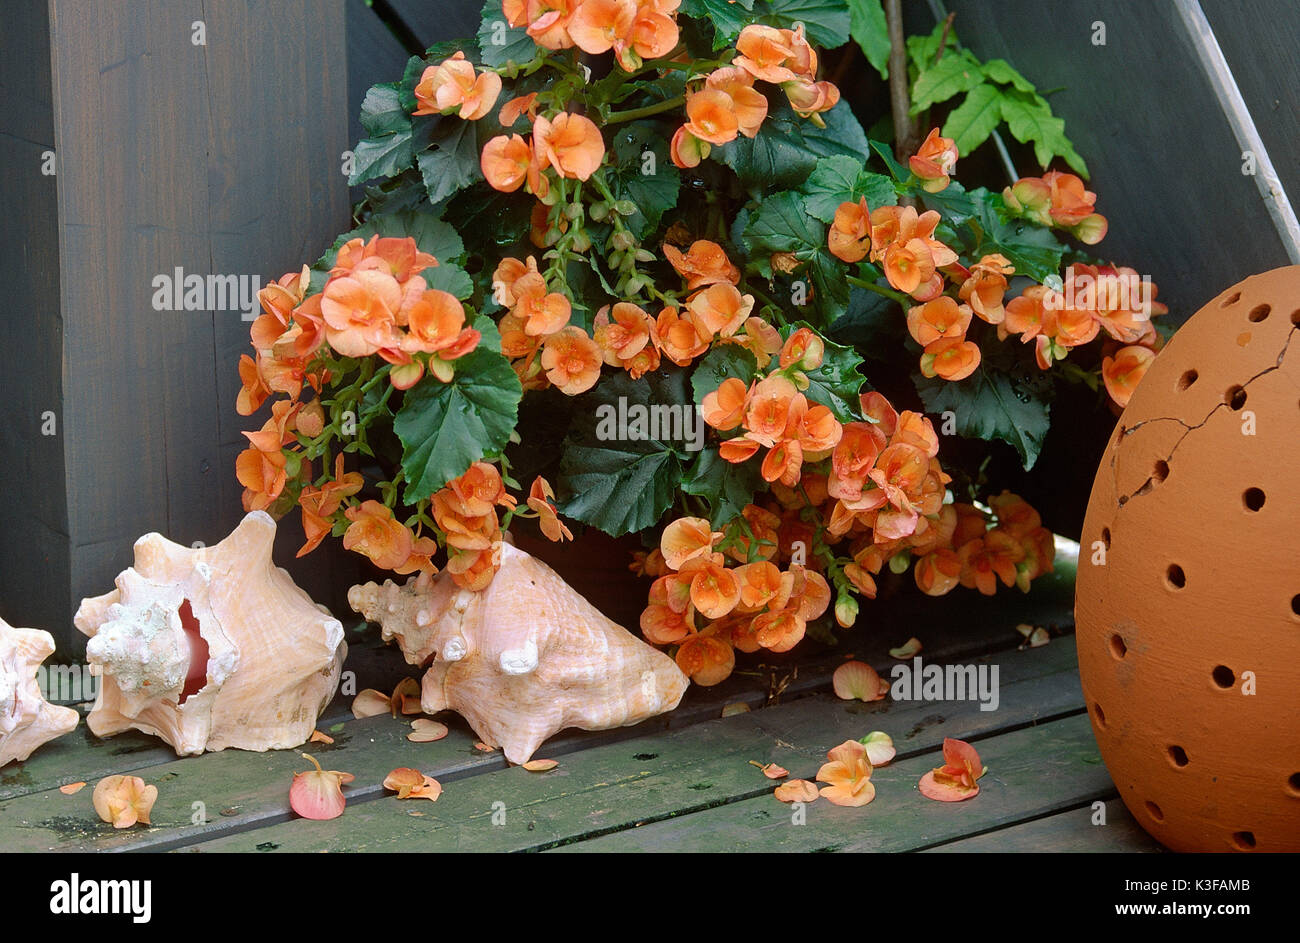 Orange begonia Stock Photo